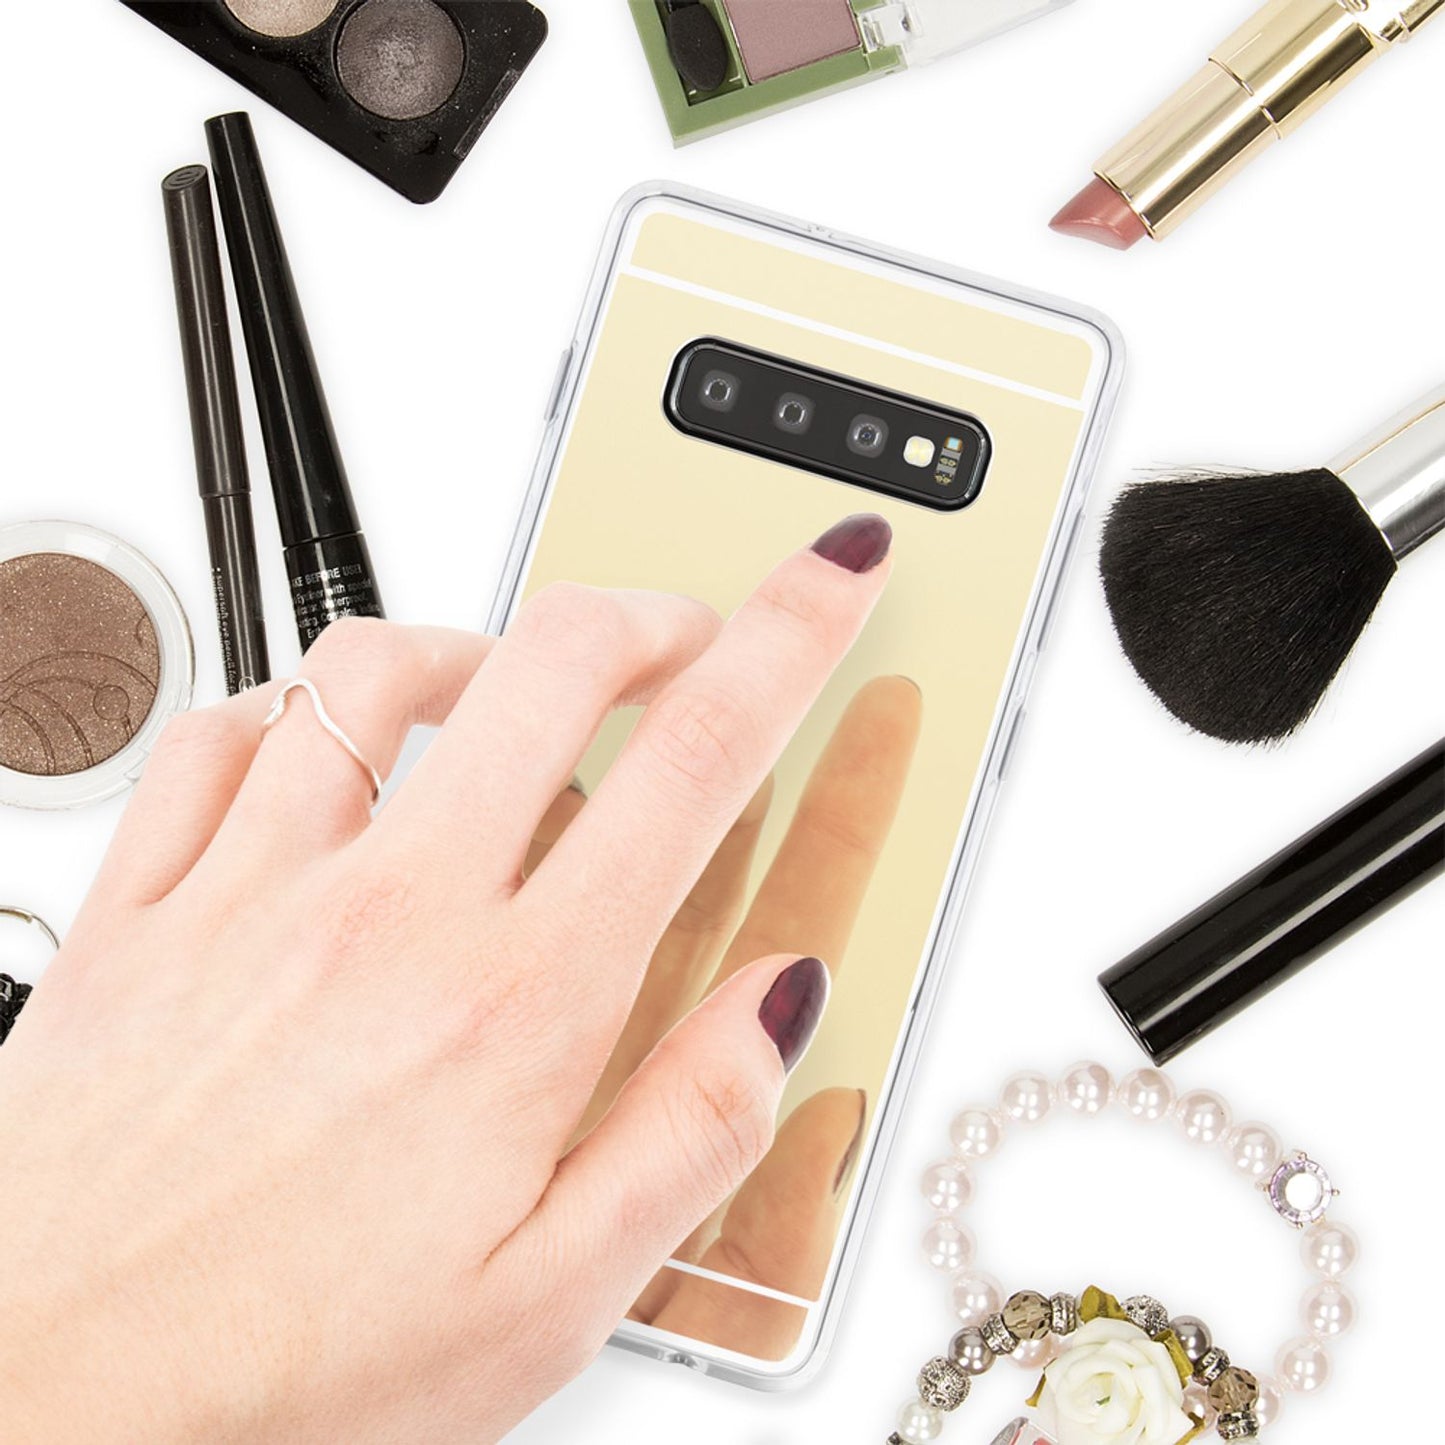 NALIA Spiegel Hülle für Samsung Galaxy S10, Slim Handyhülle Mirror Silikon Case